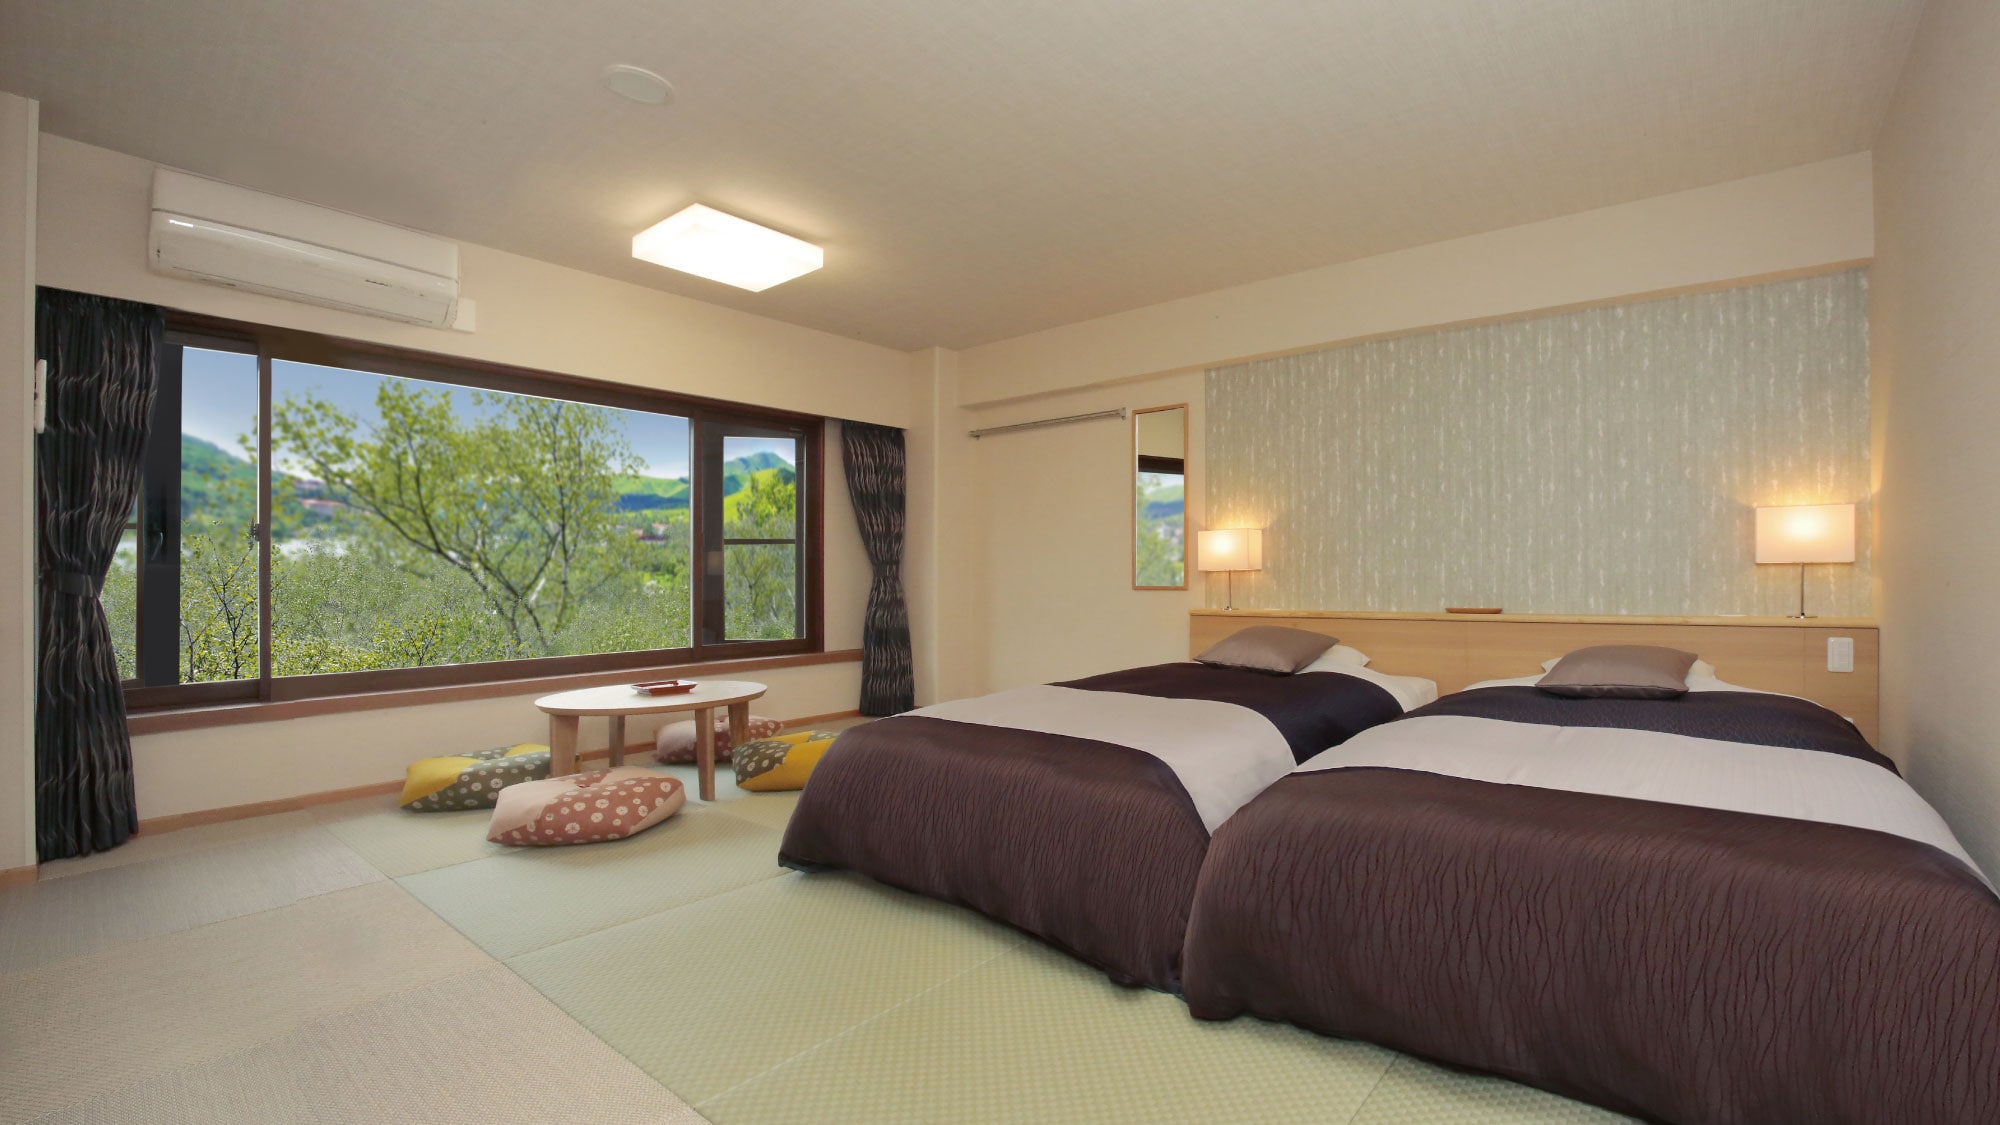 Gedung timur Japanese modern room kapasitas 4 orang